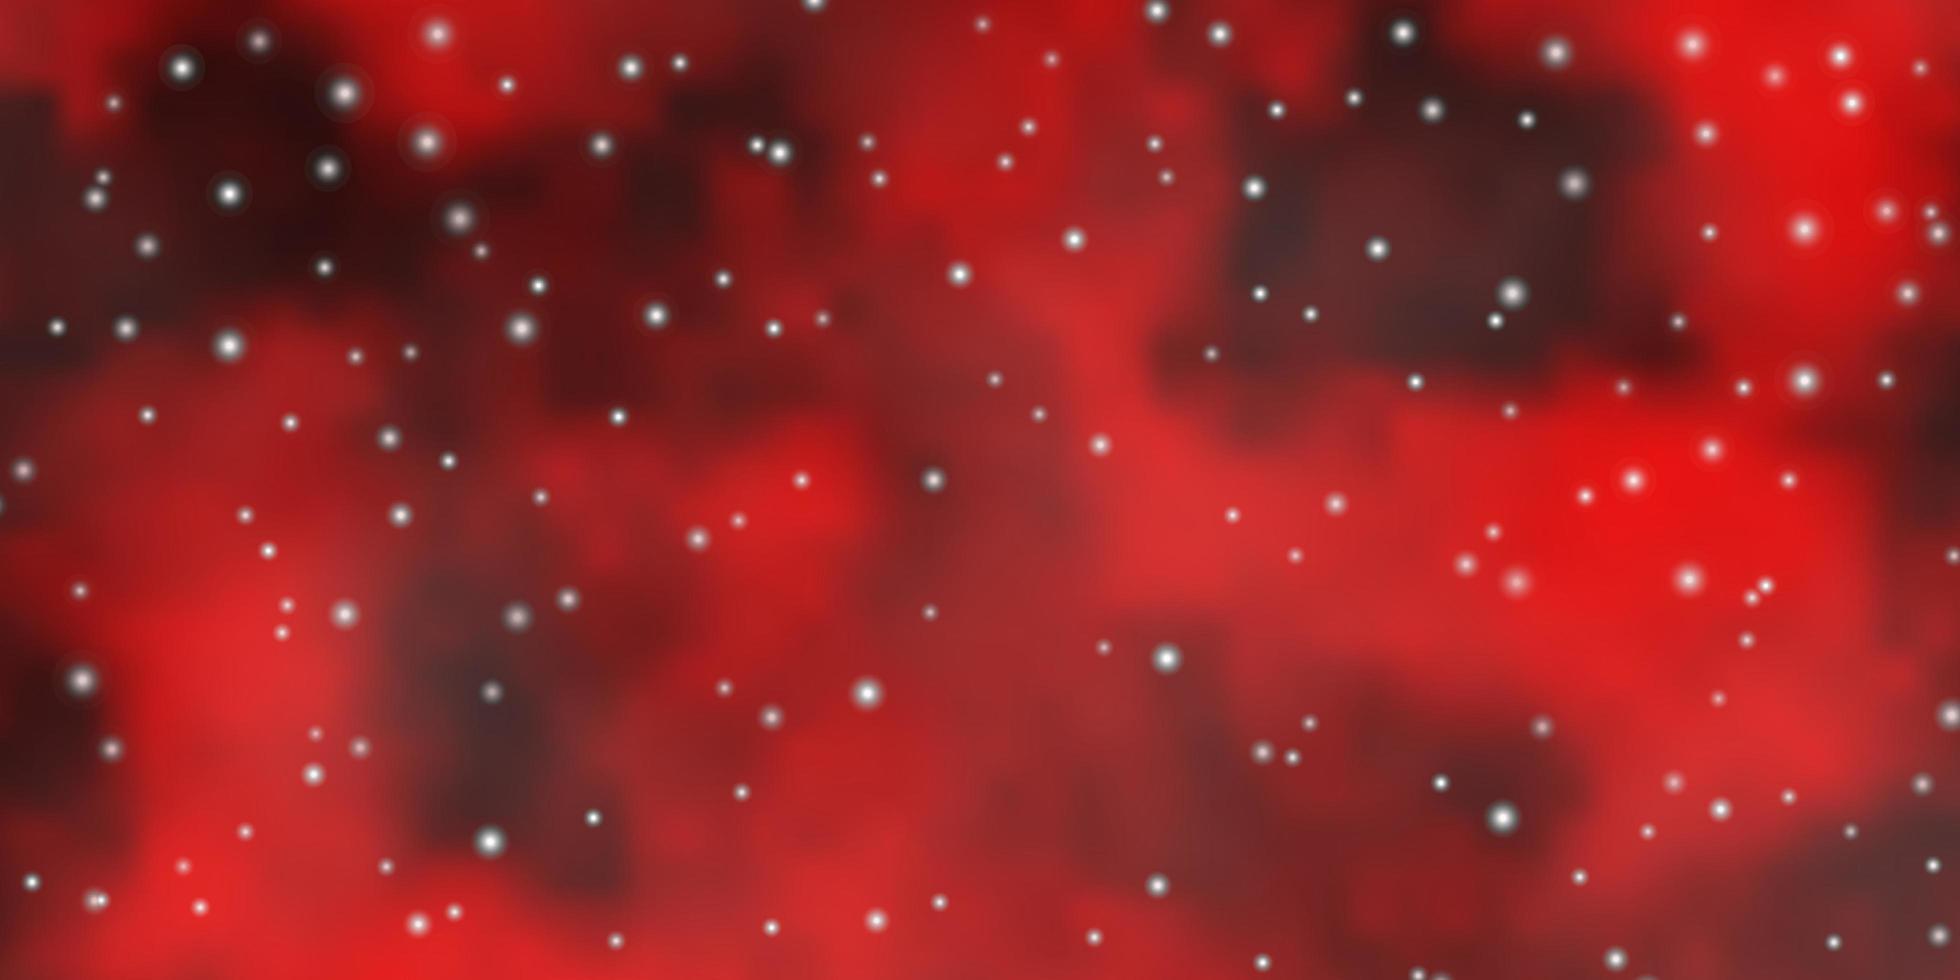 modelo de vetor vermelho escuro com estrelas de néon brilhando ilustração colorida com design de estrelas pequenas e grandes para a promoção de sua empresa